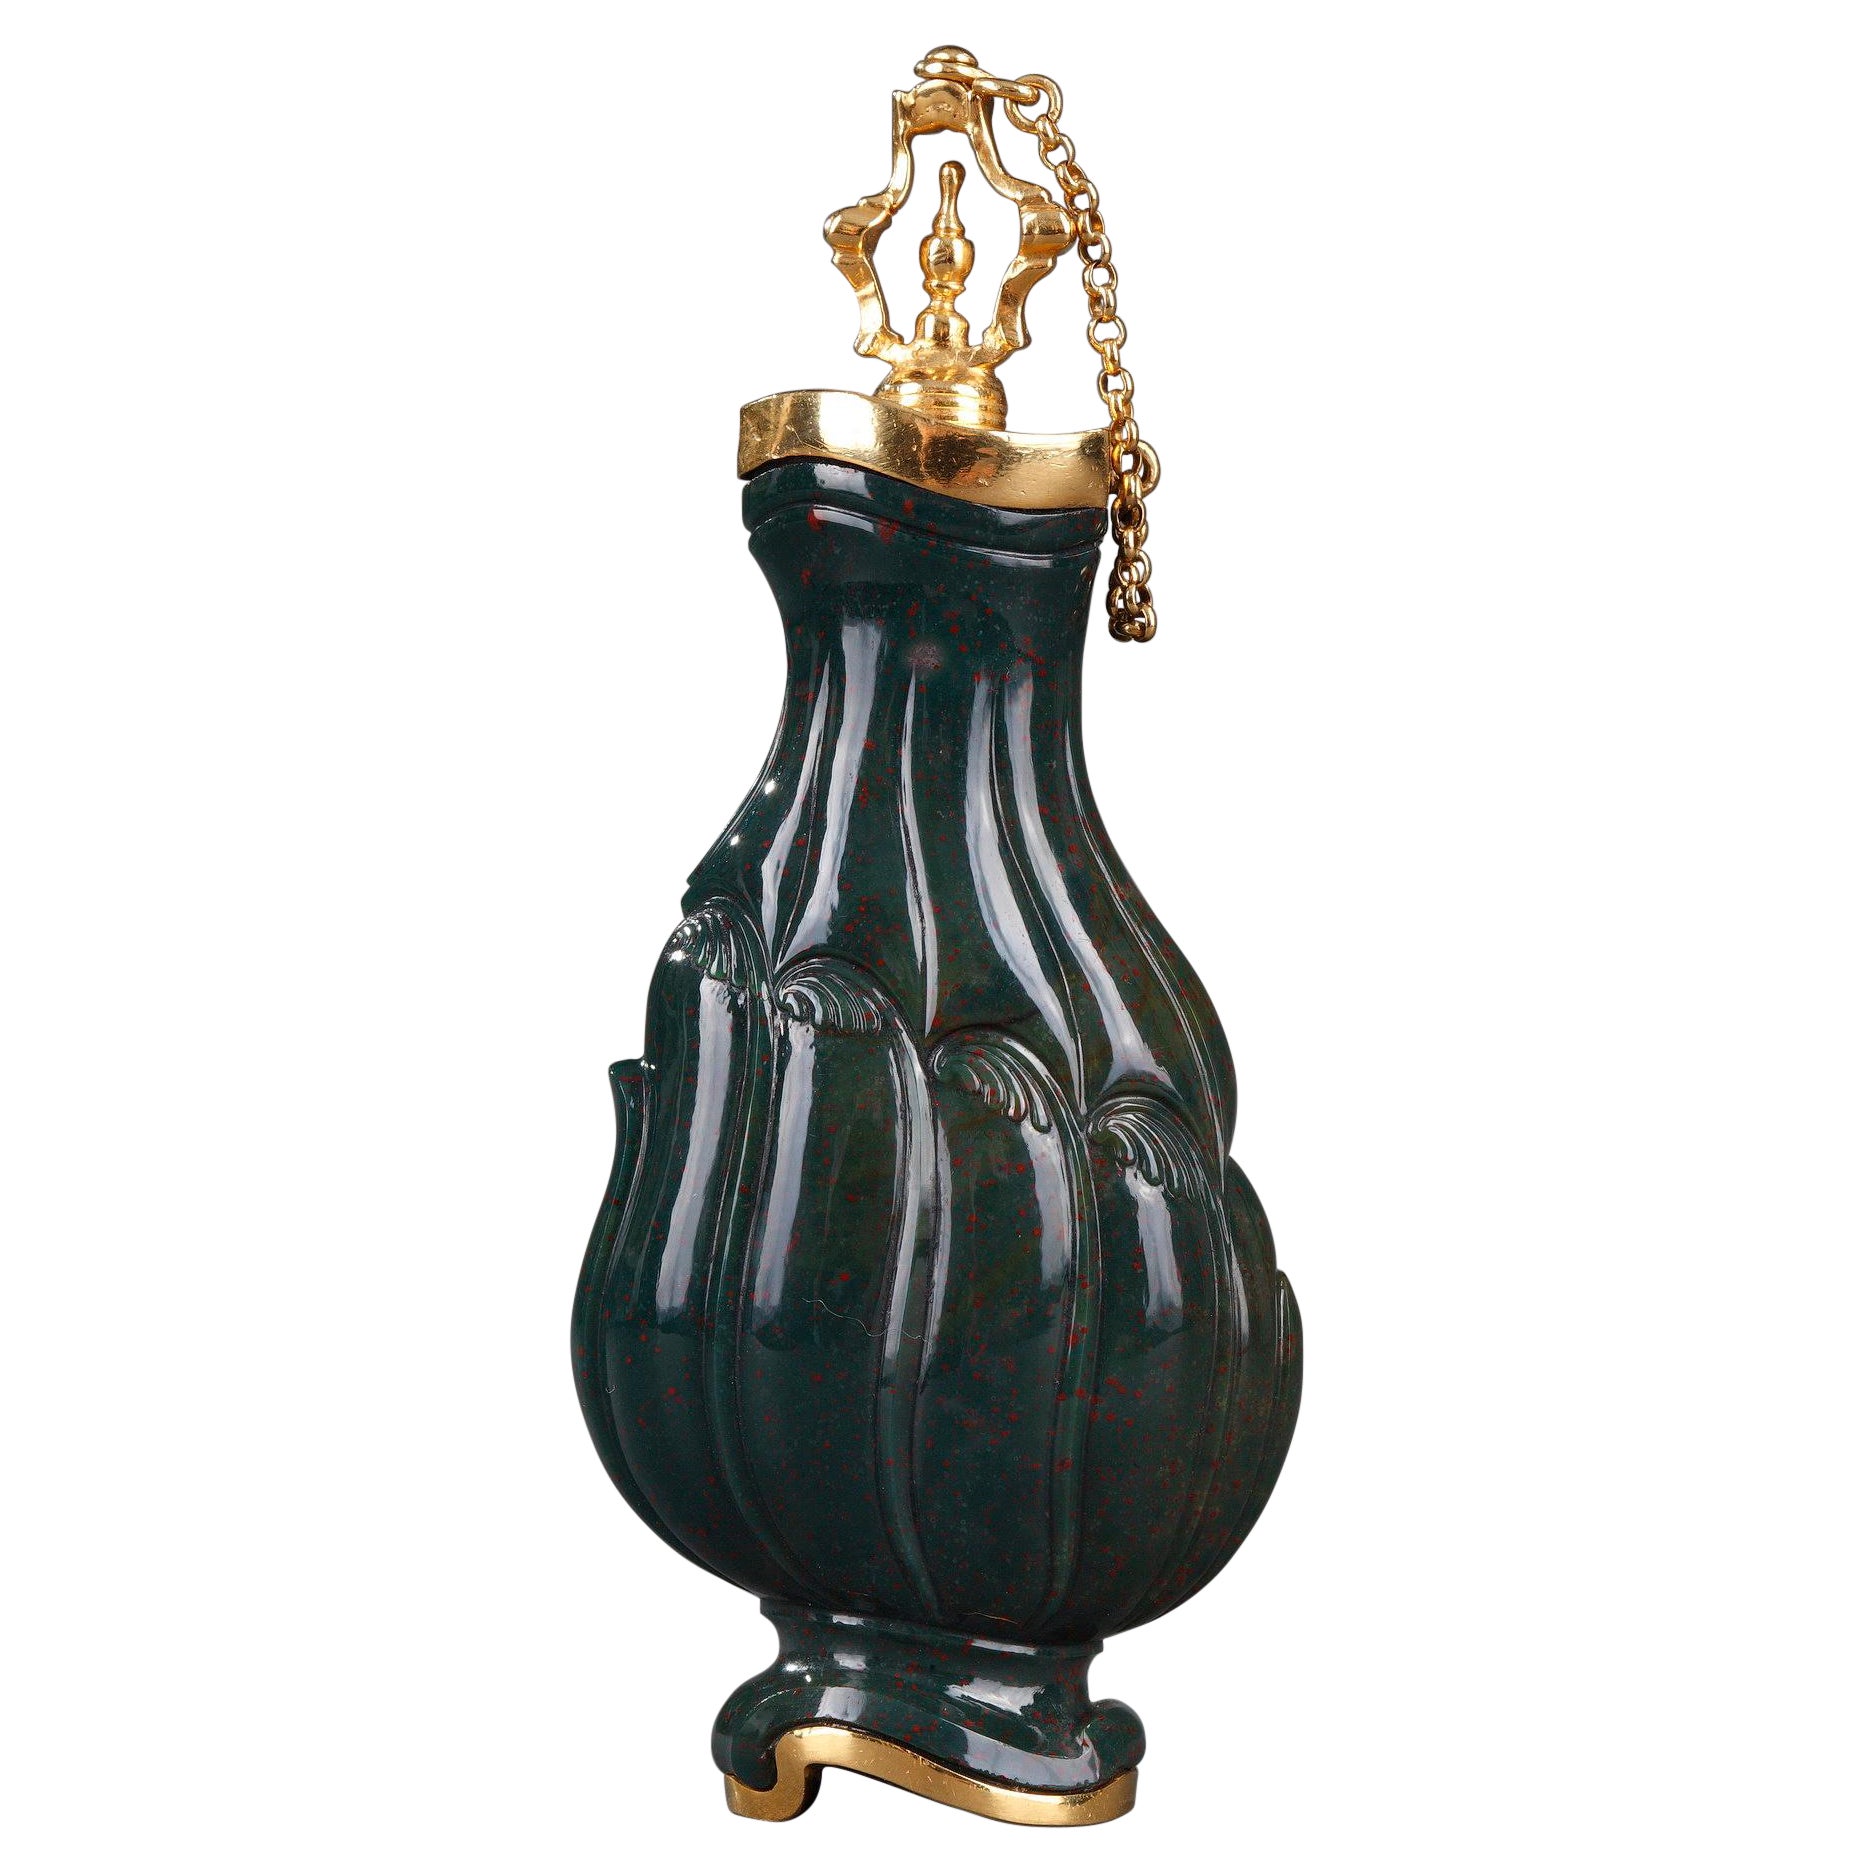 Flacon de jaspe et d'or du 18ème siècle. Craftsmanship anglais